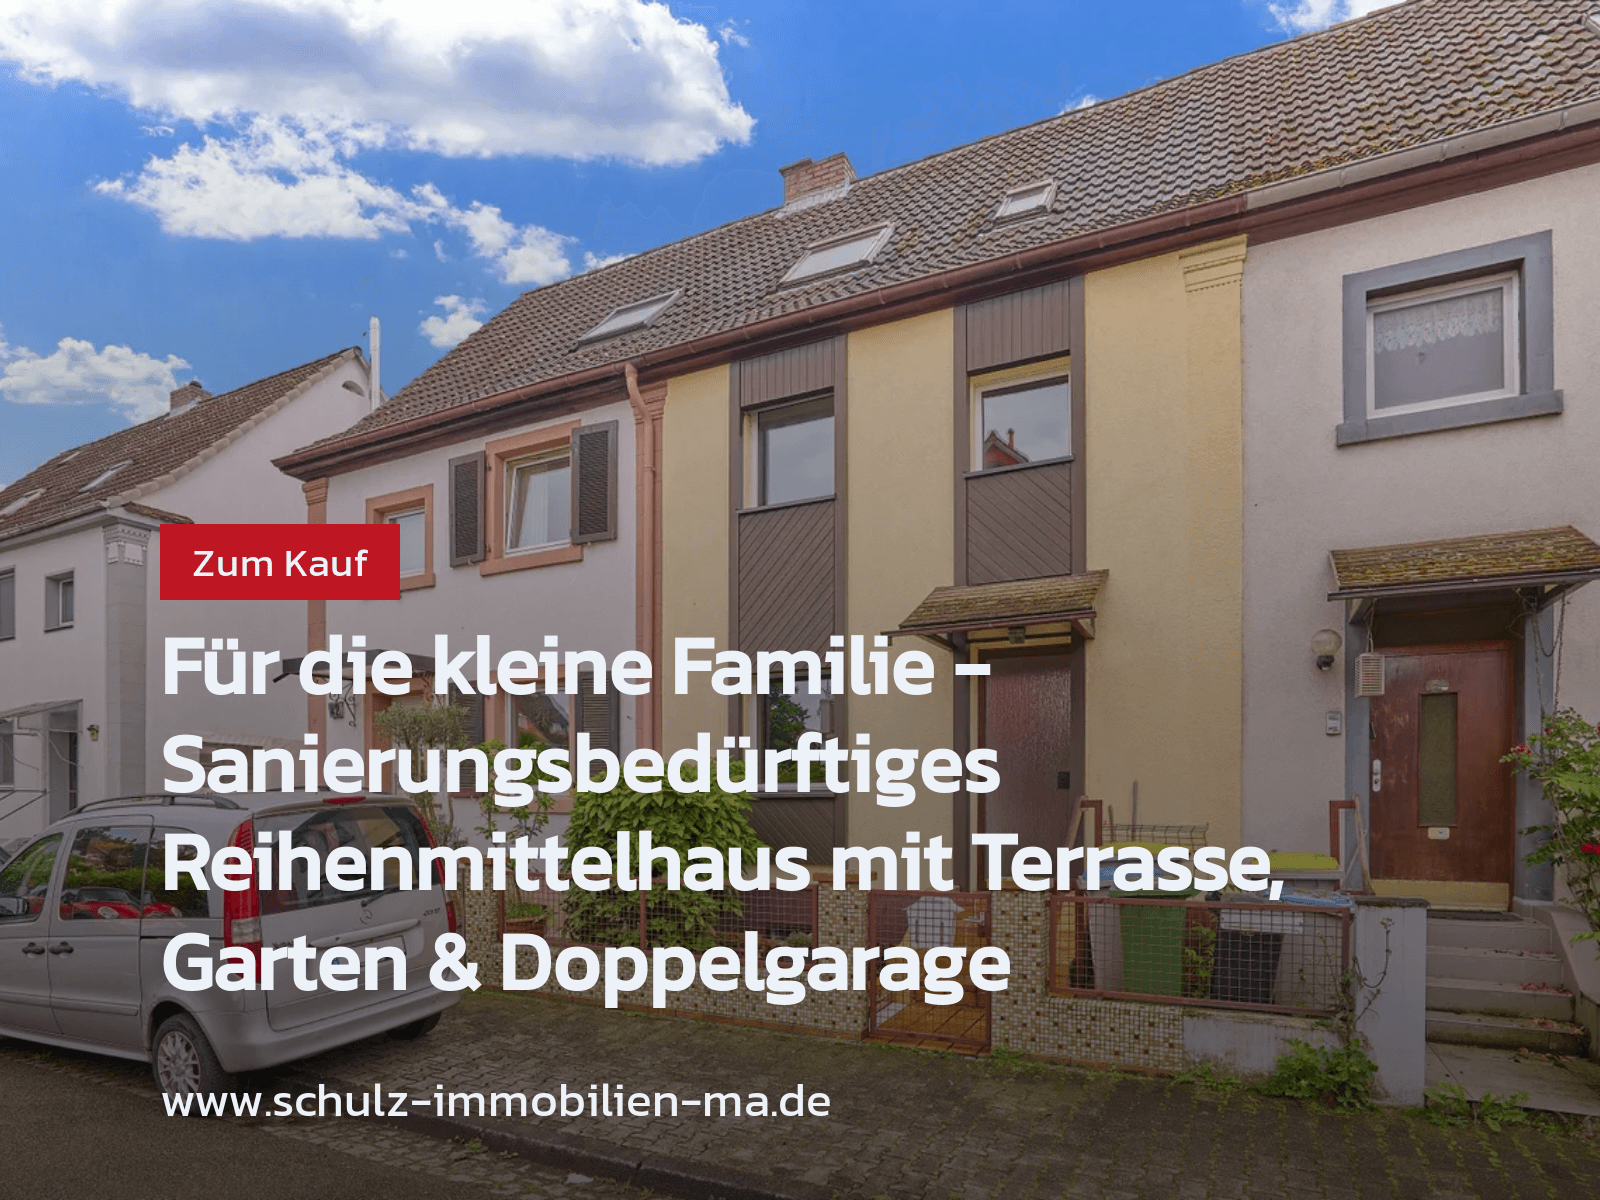 Neu im Angebot: Für die kleine Familie – Sanierungsbedürftiges Reihenmittelhaus mit Terrasse, Garten & Doppelgarage